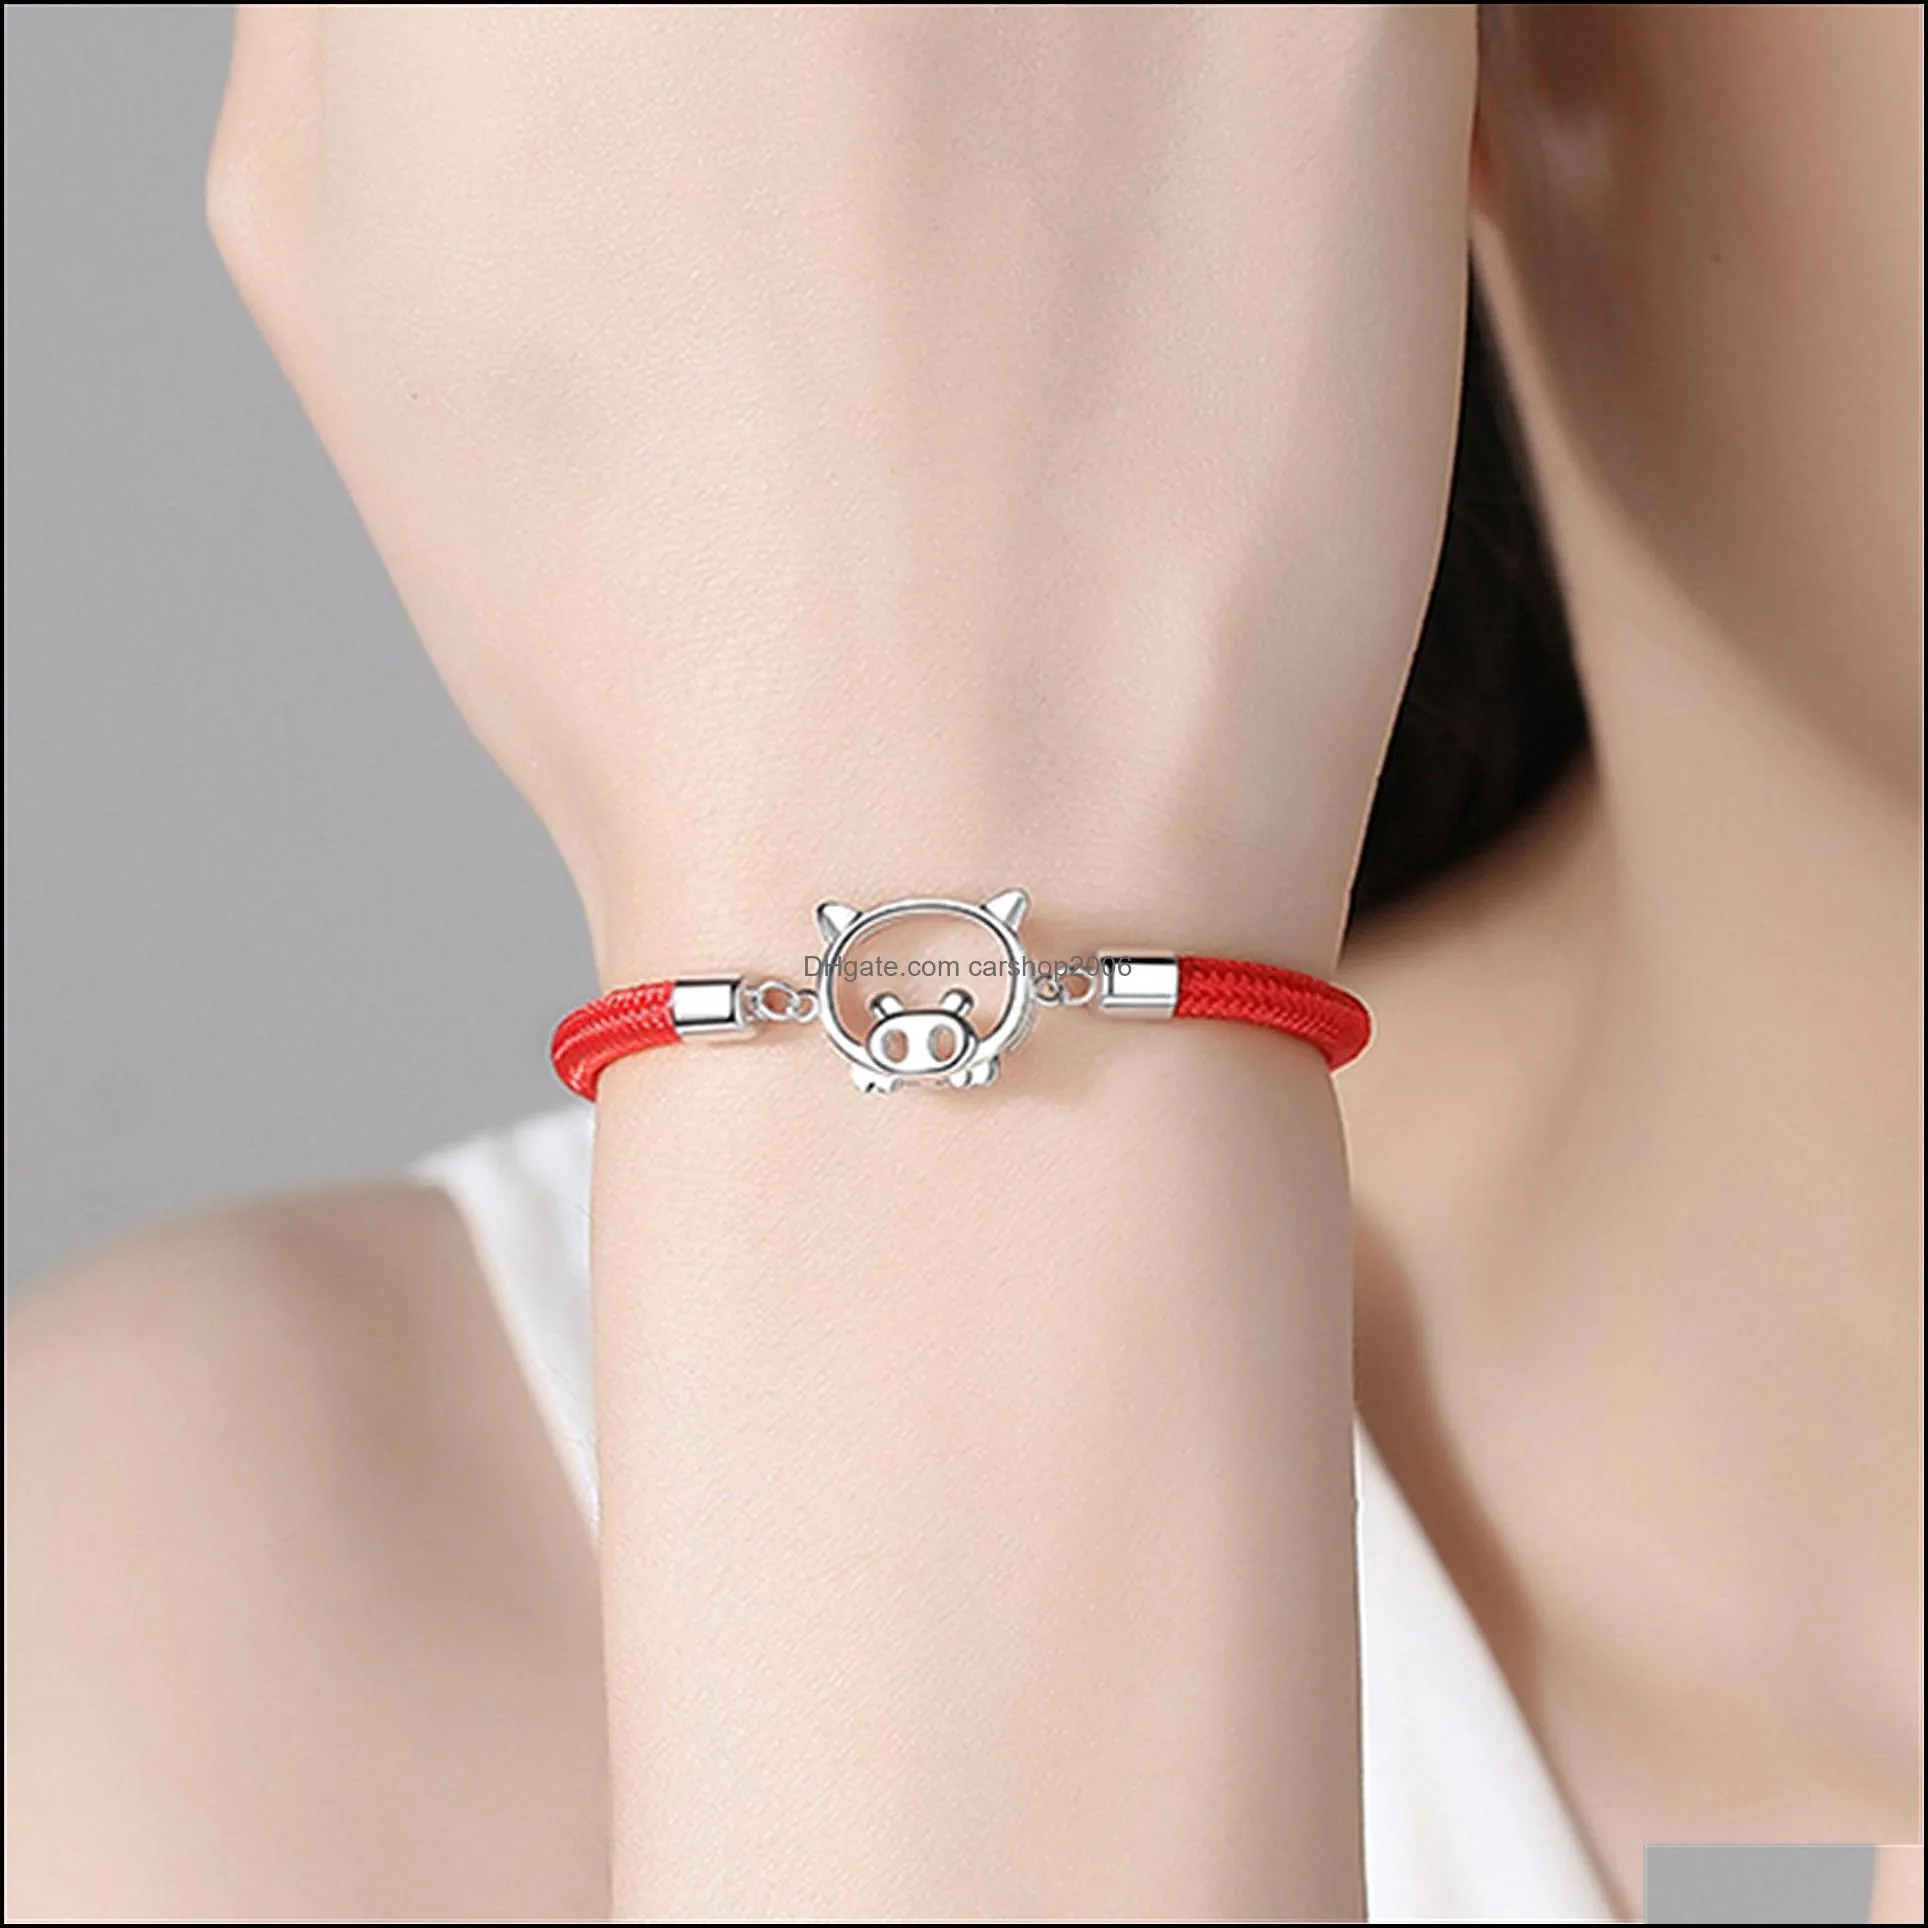 pig bracelet lucky red rope bracelets wild fashion personality friendship bracelets